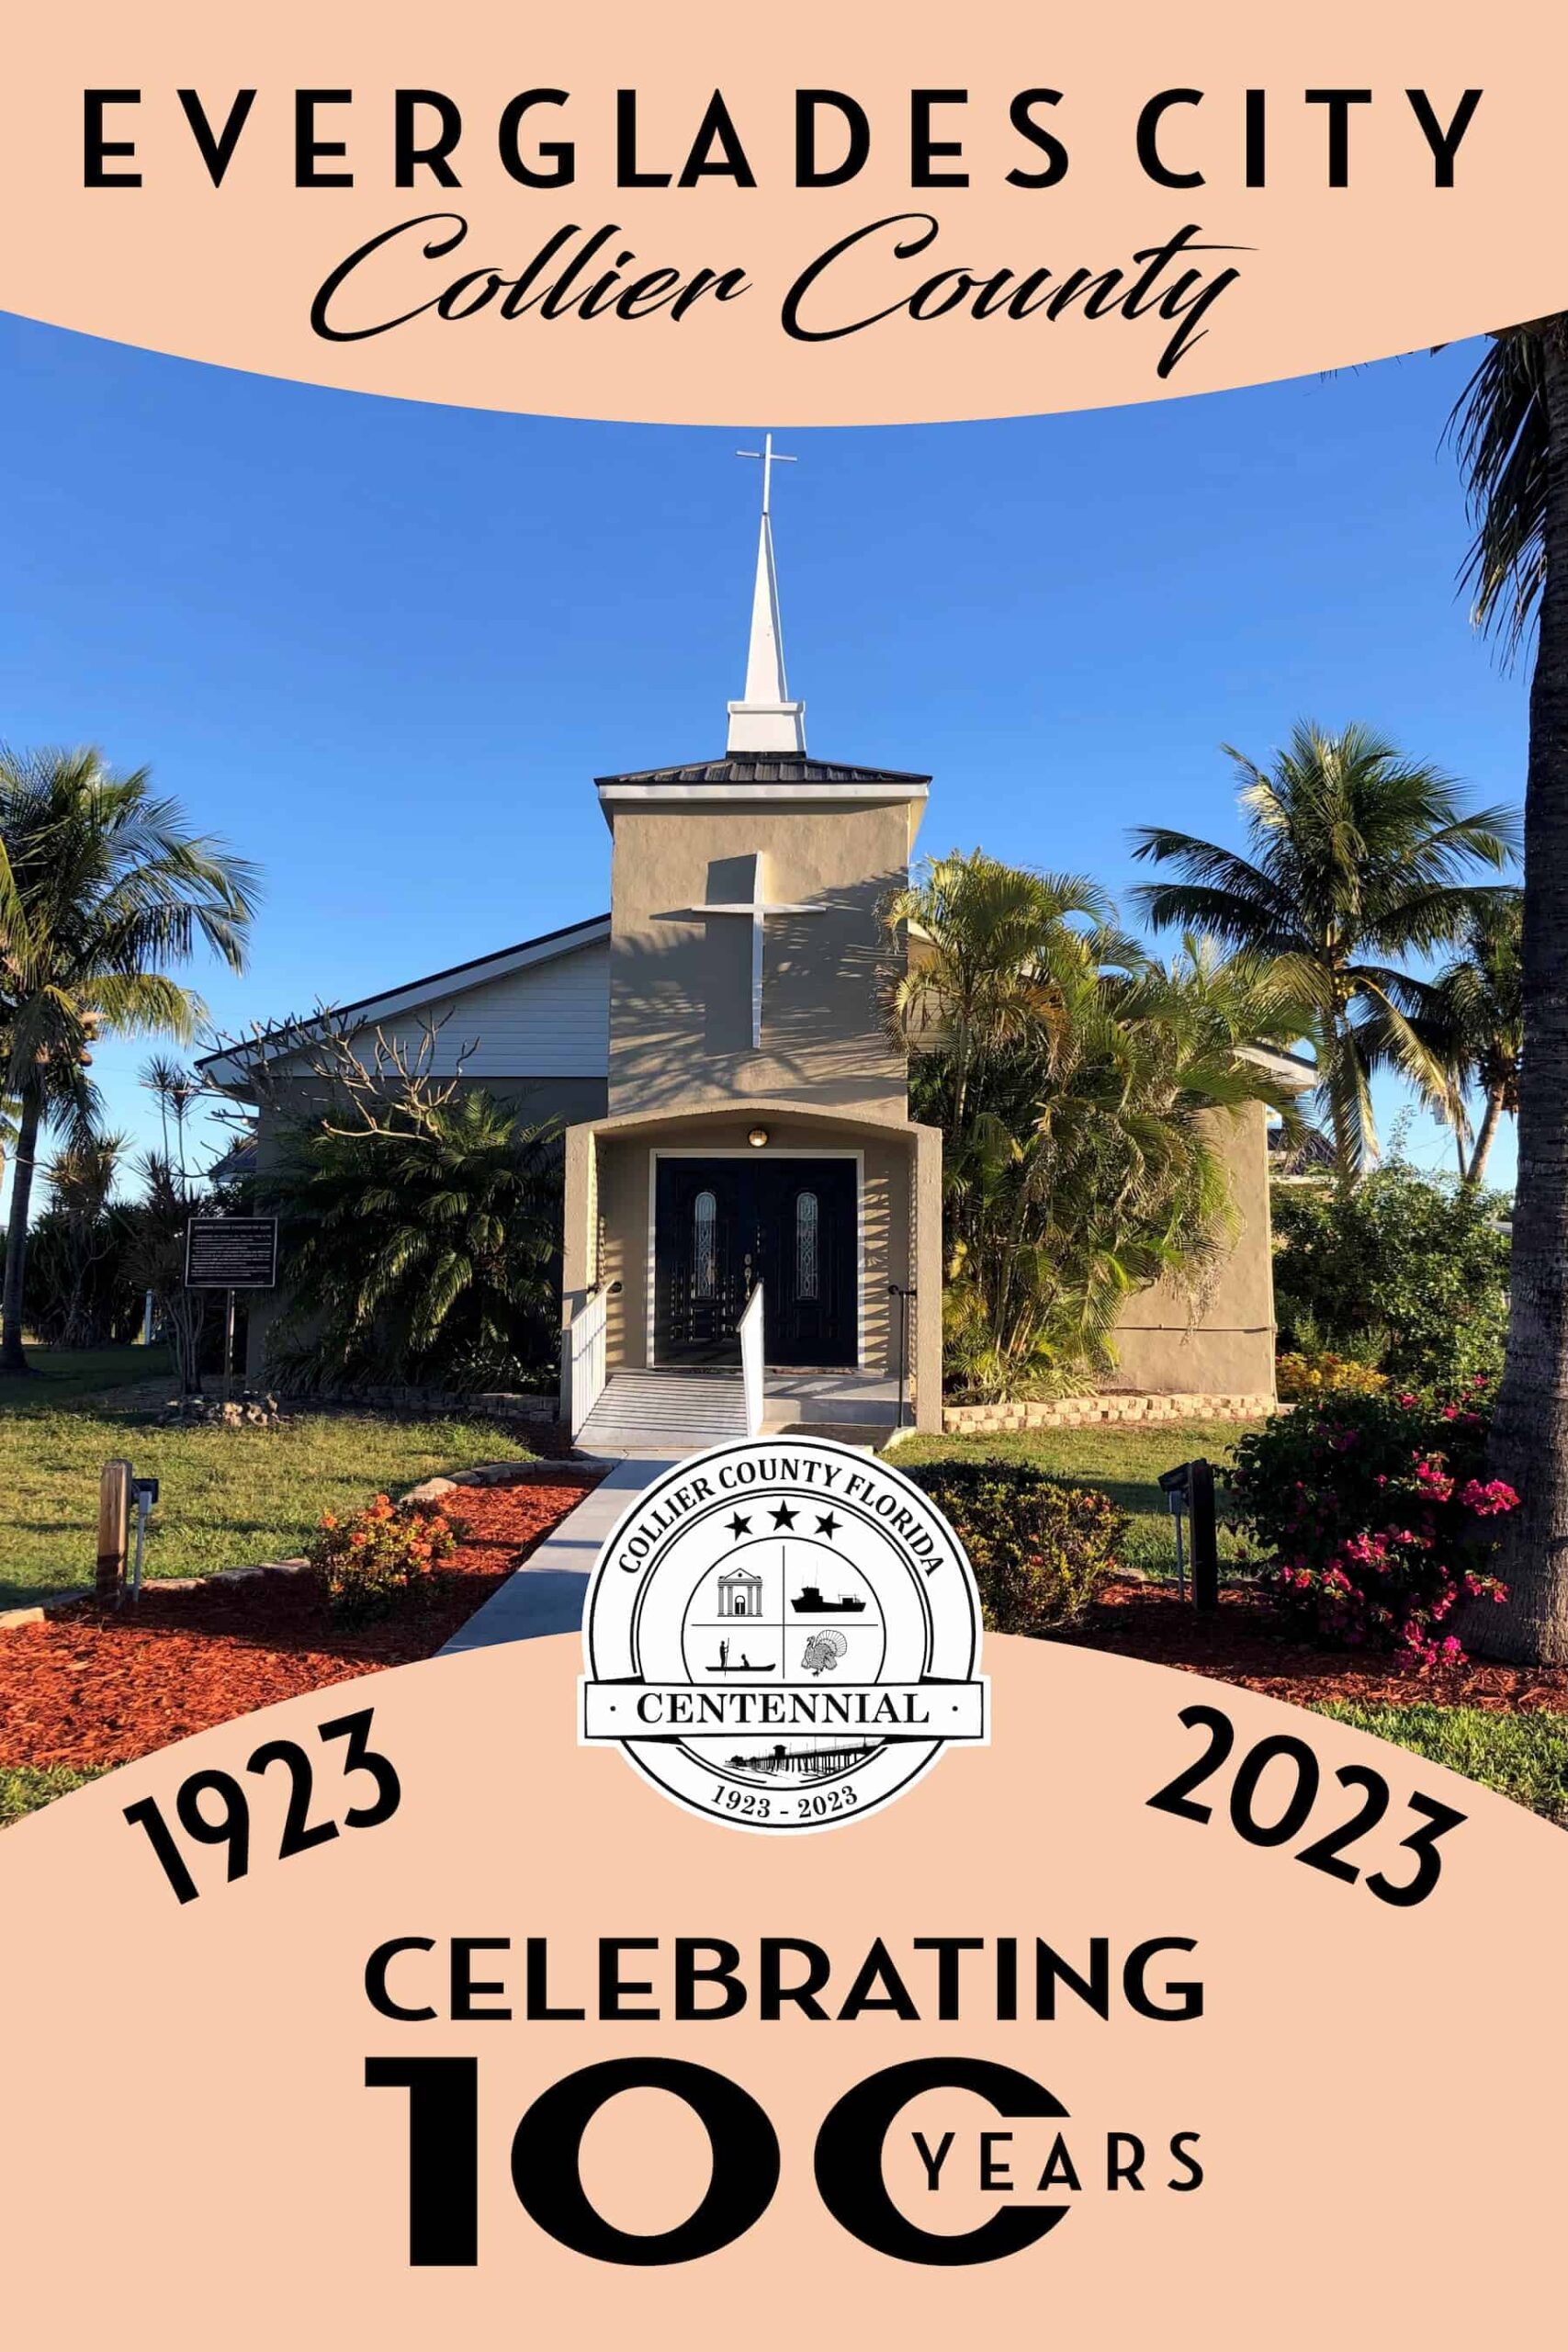 Church of God image - Celebrating 100 Years